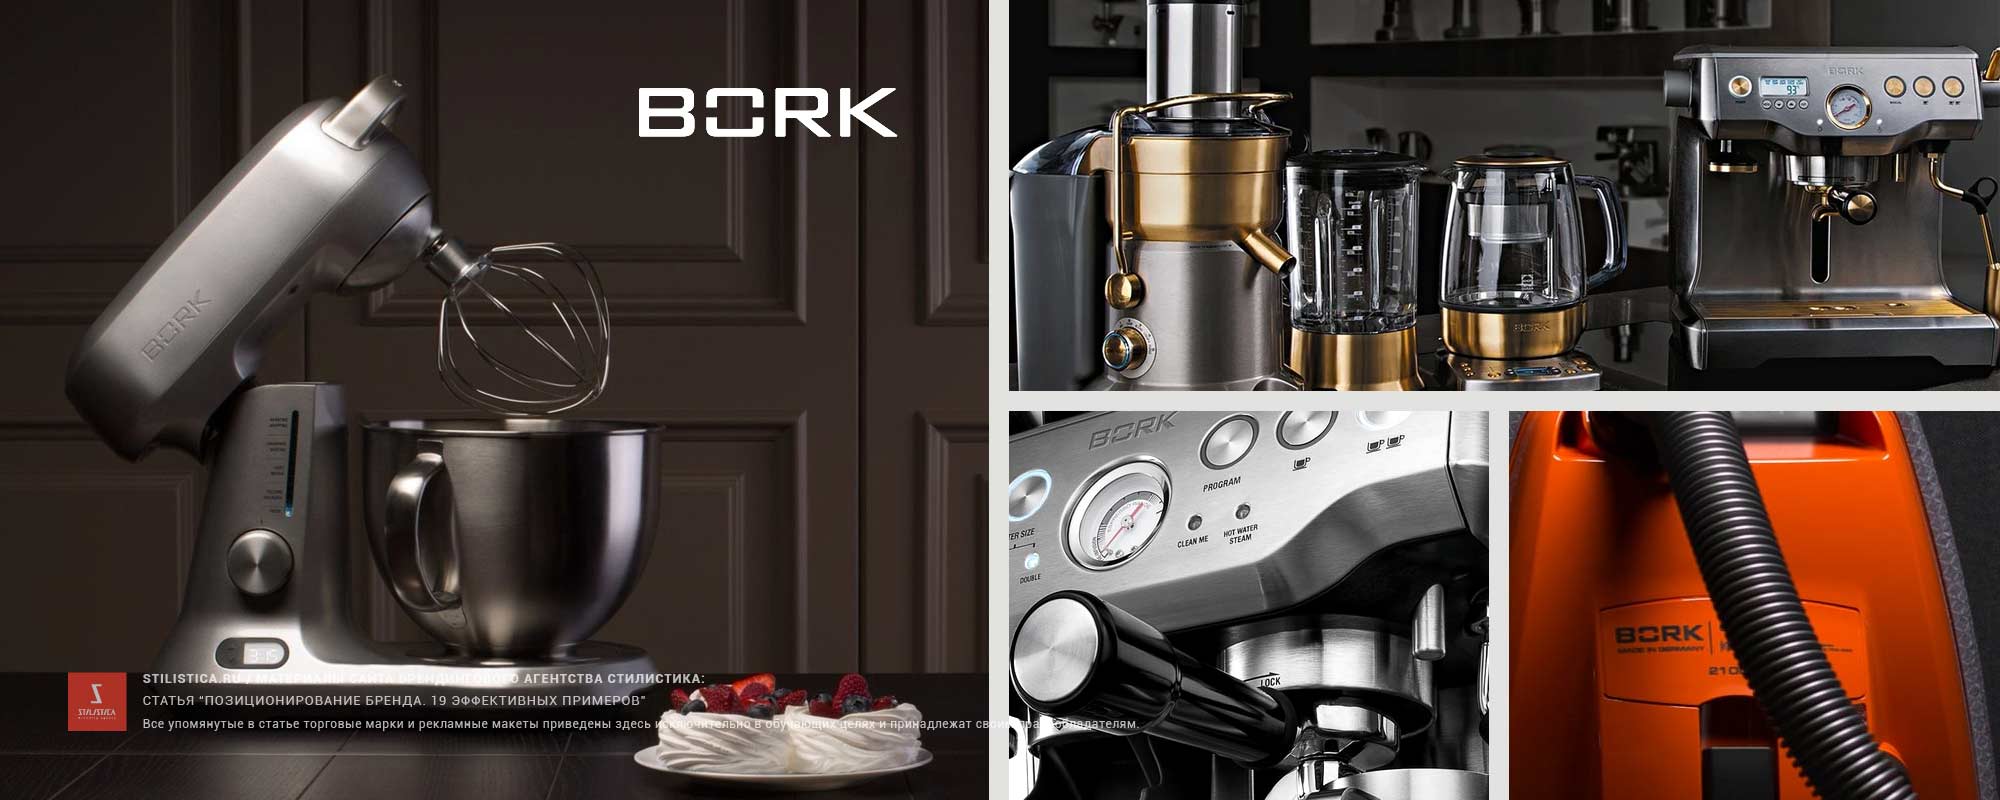 Позиционирование бренда Bork в дизайне. Примеры